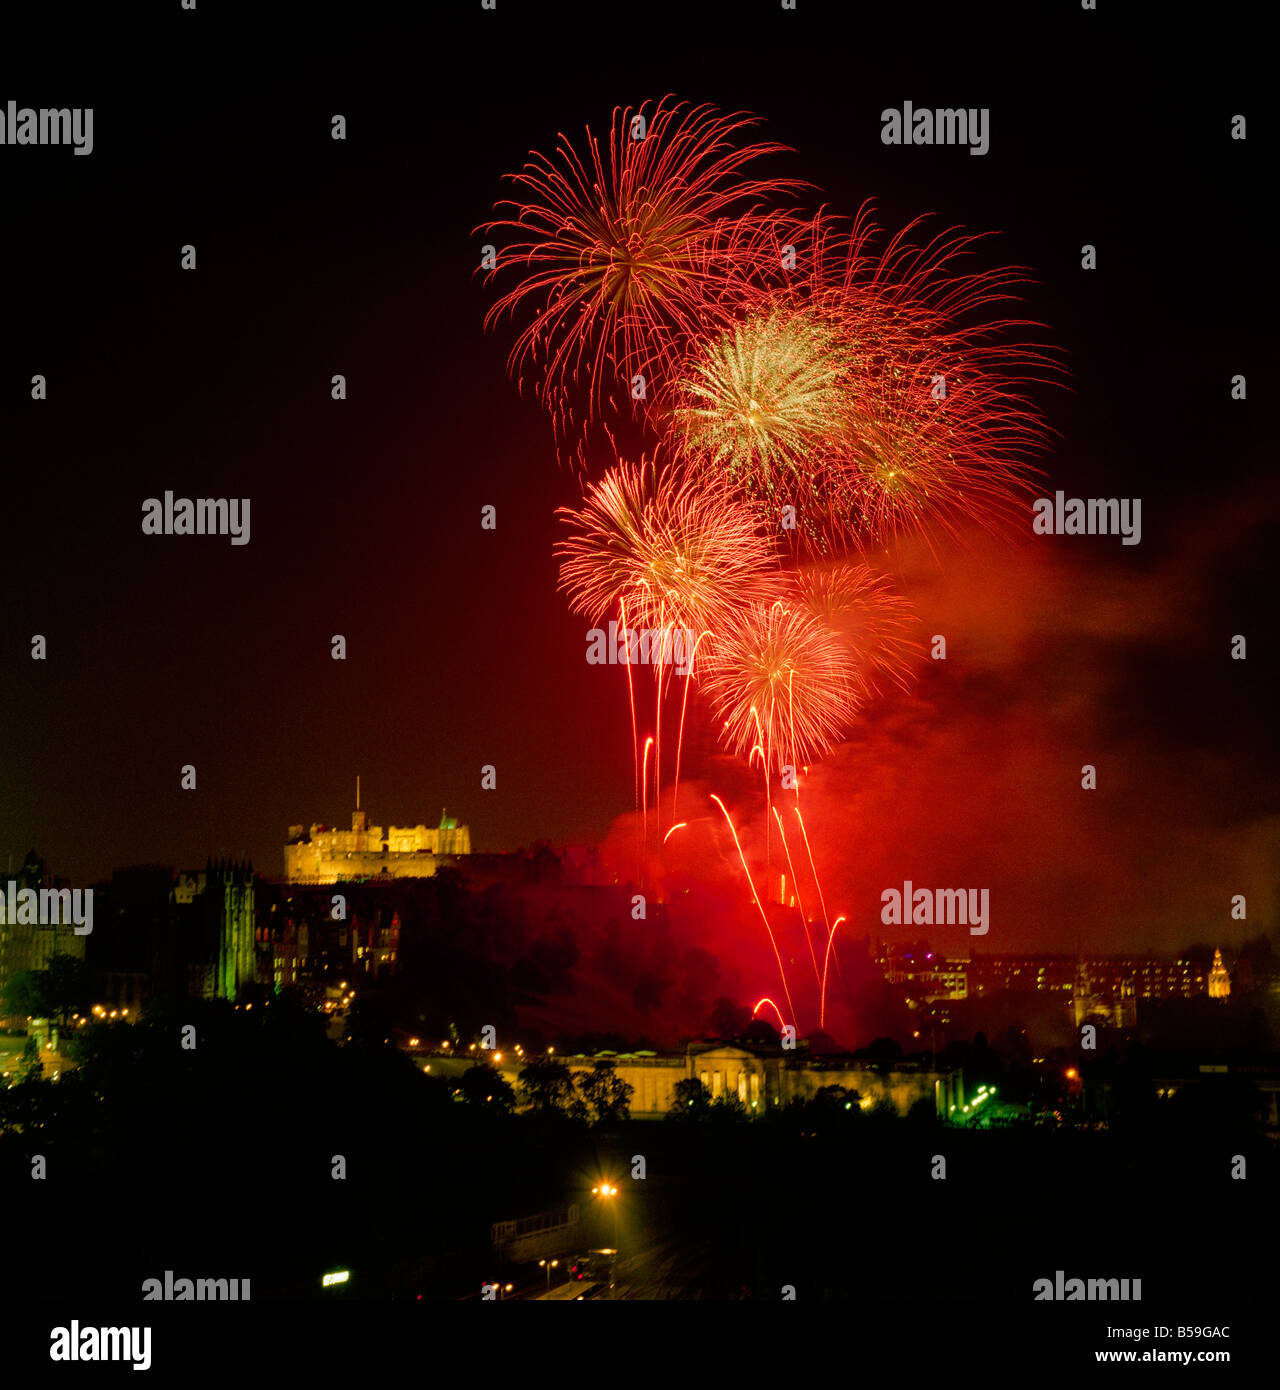 El festival de fuegos artificiales en el castillo de Edimburgo, Escocia, visto desde el hotel Balmoral Foto de stock